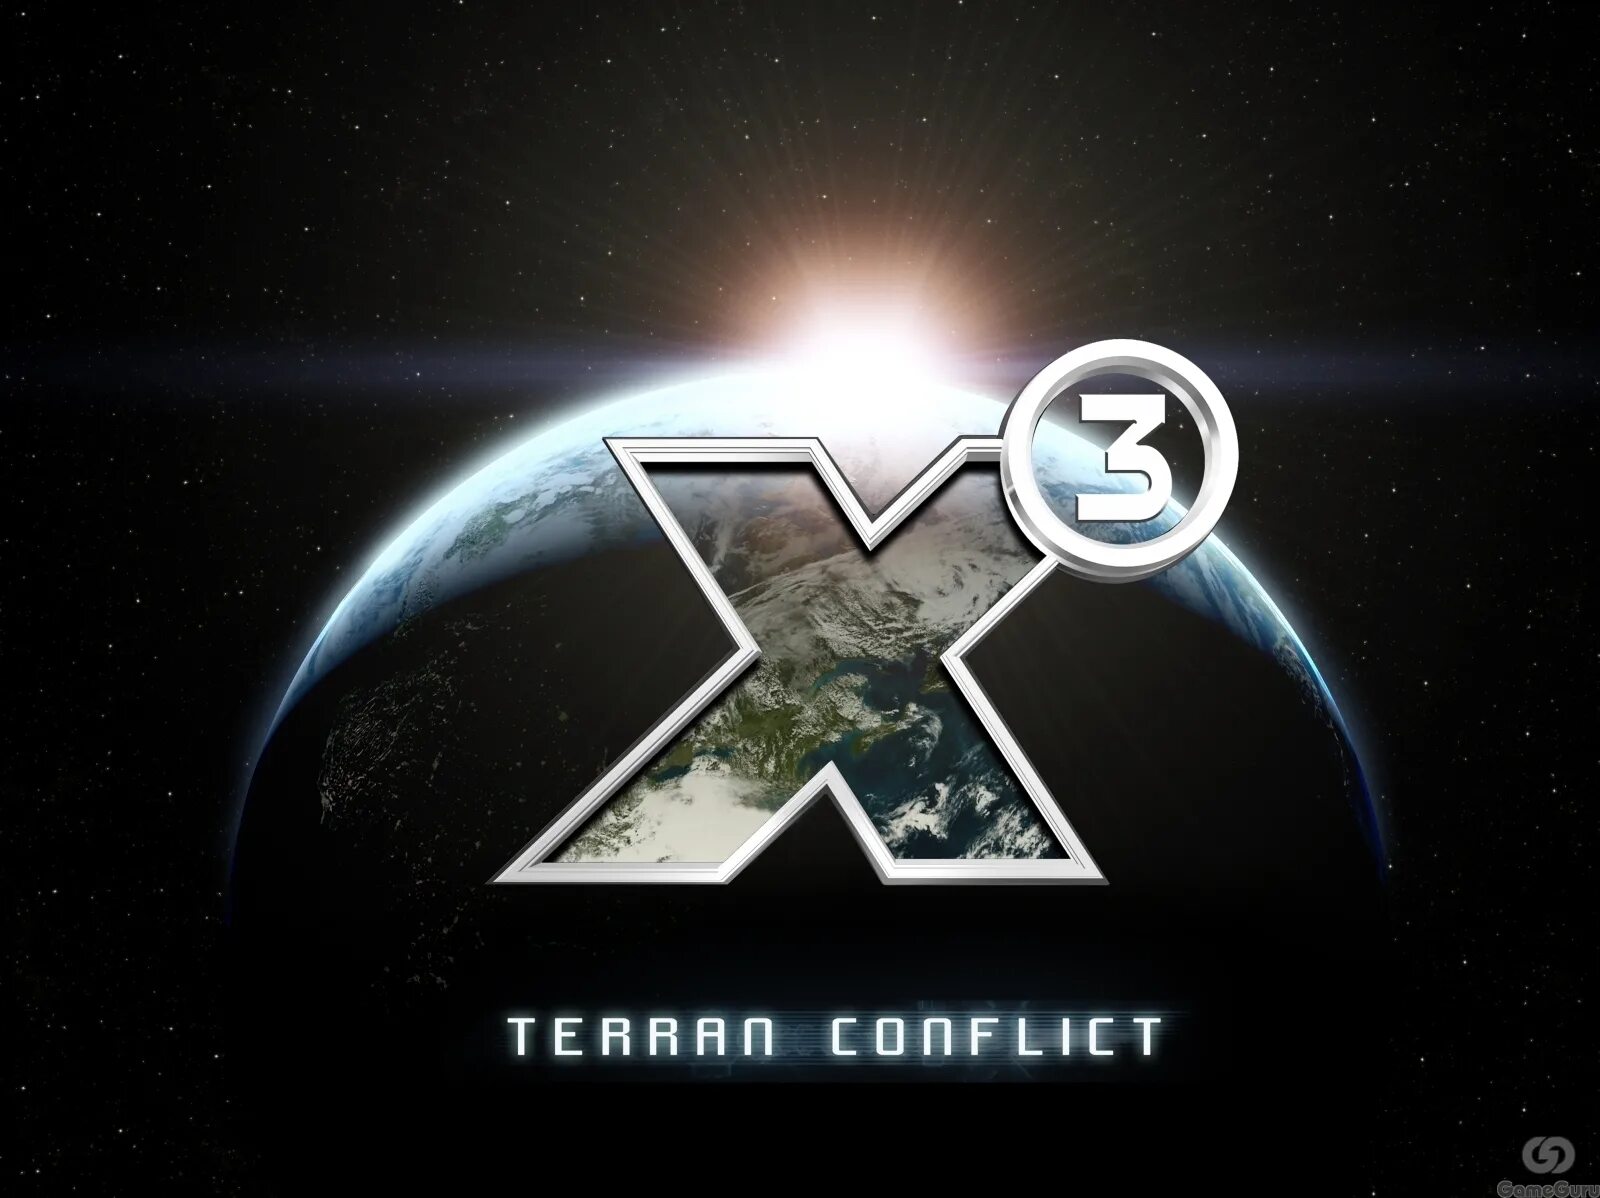 67 x 3. Х3 Terran Conflict. X3: земной конфликт. X³: Terran Conflict. X3 игра.